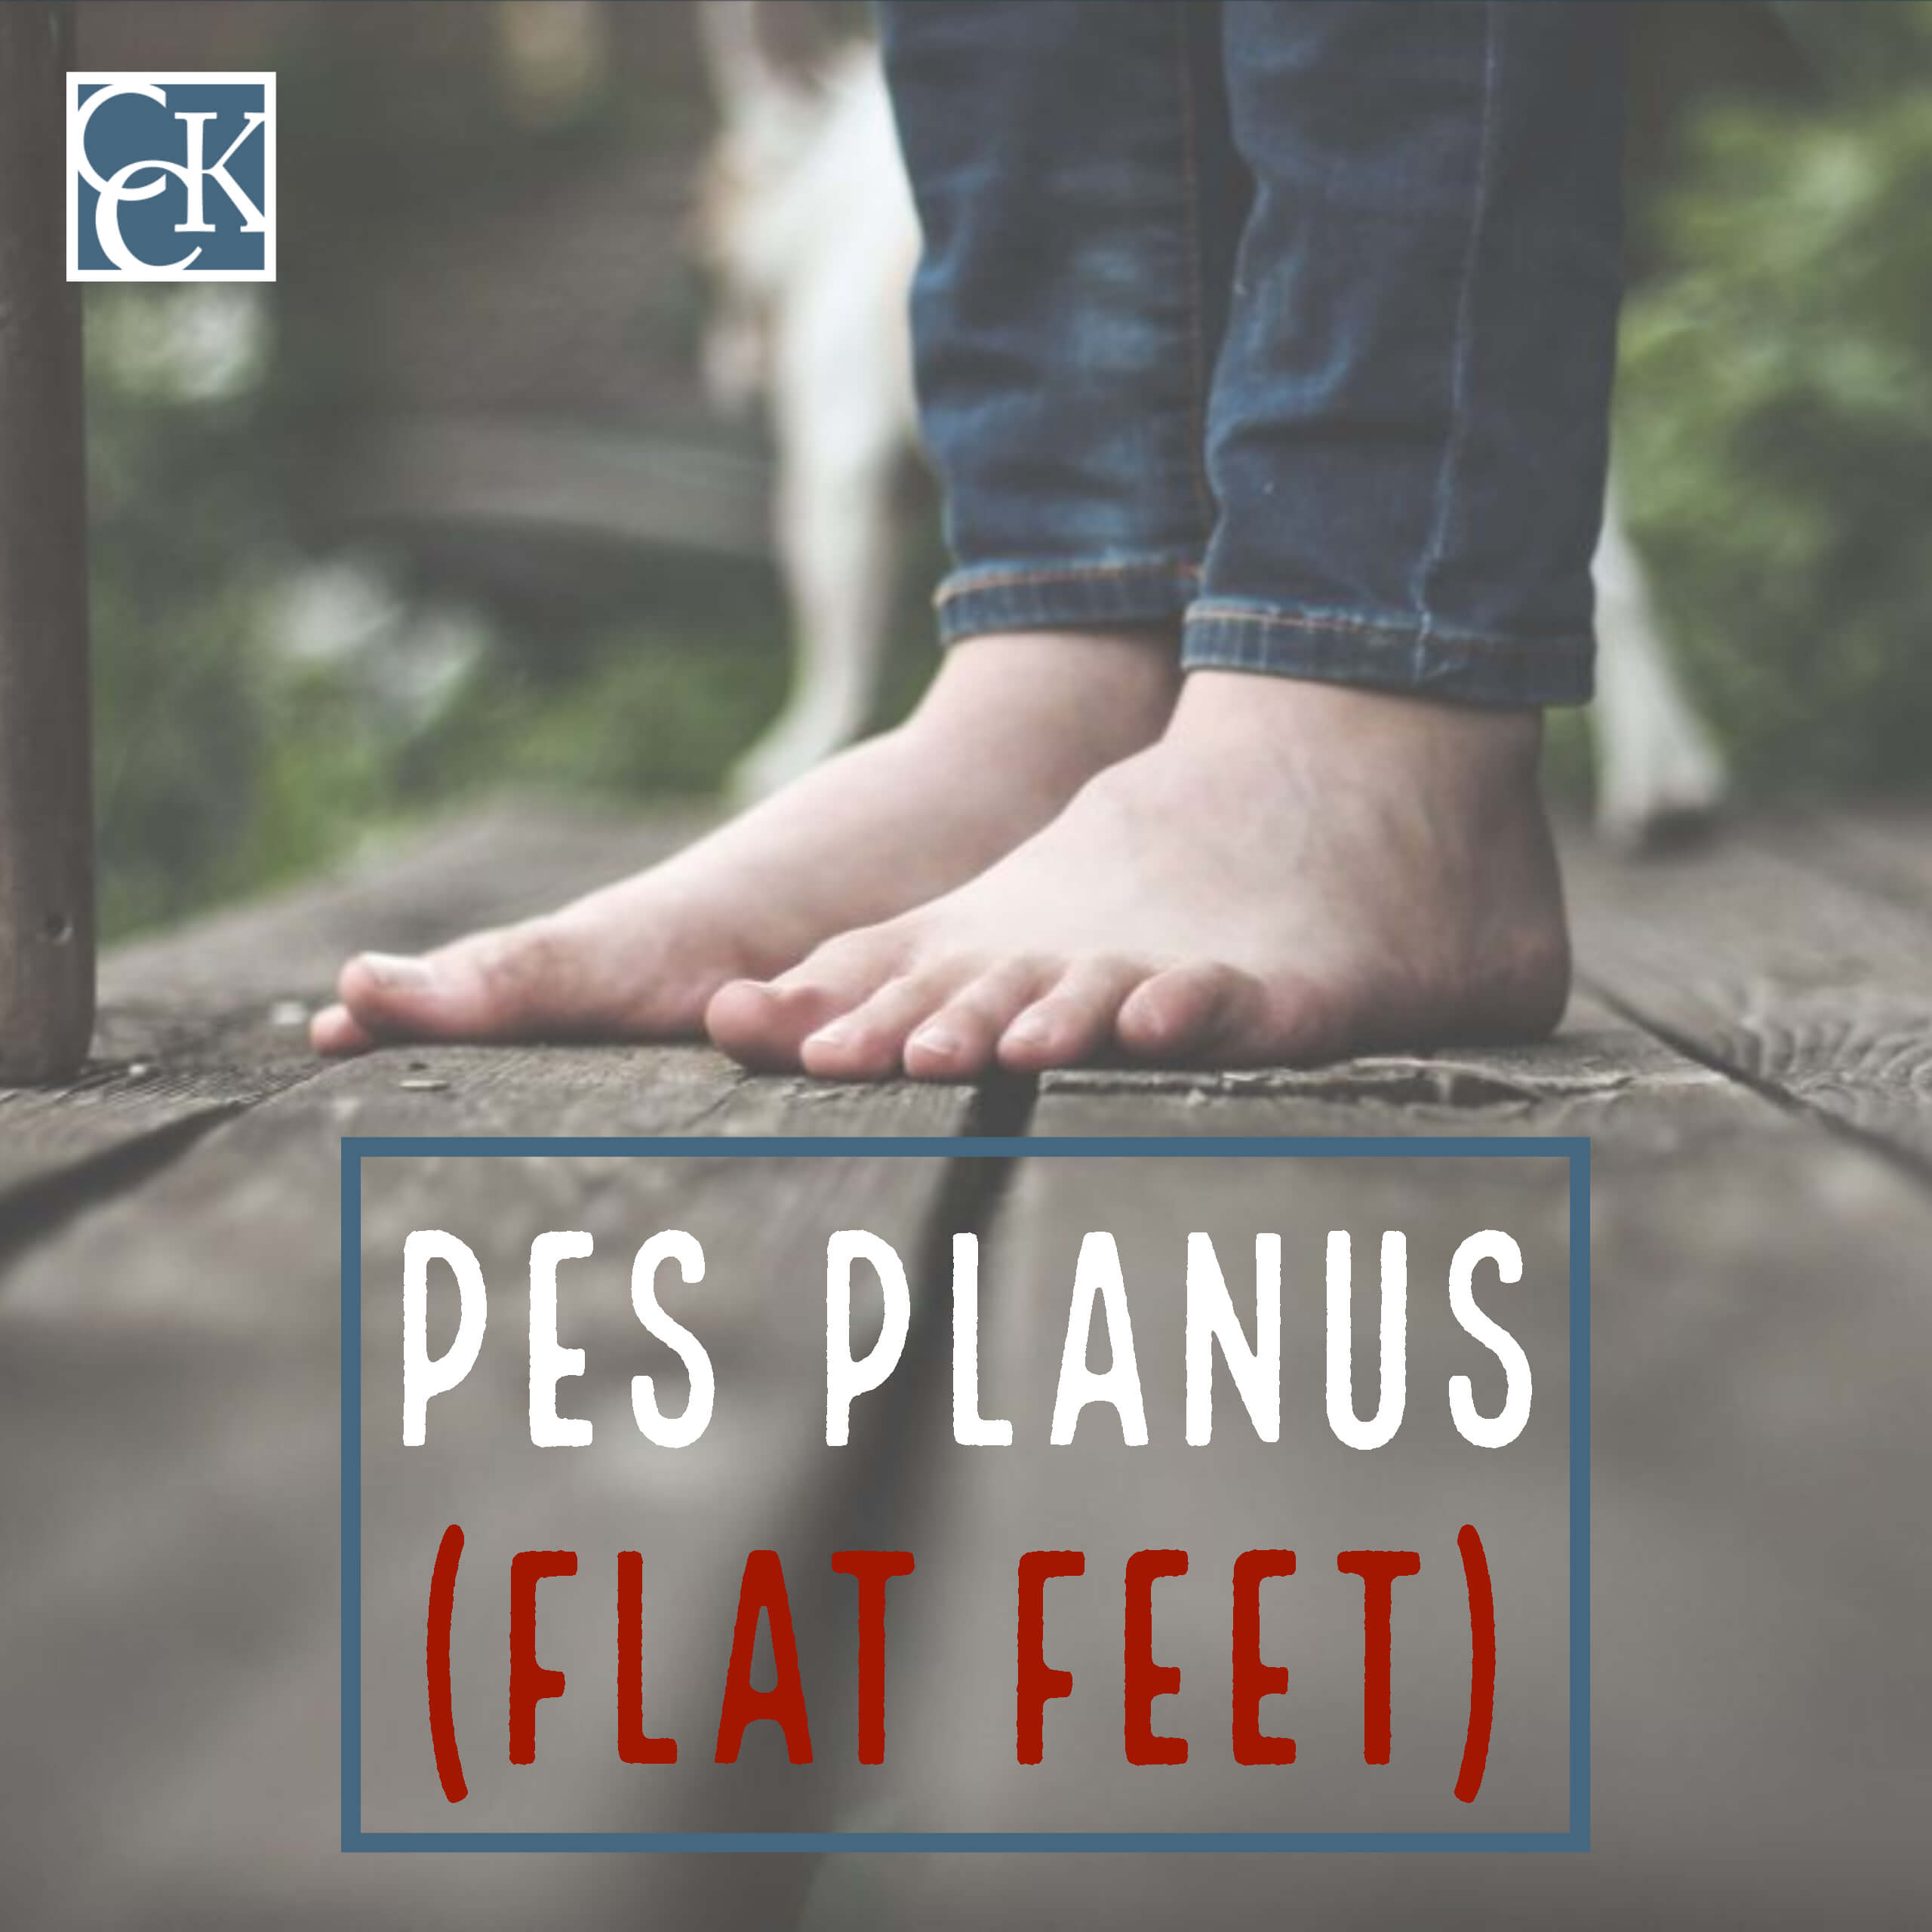 VA Disability Ratings for Pes Planus (Flat Feet) Explained